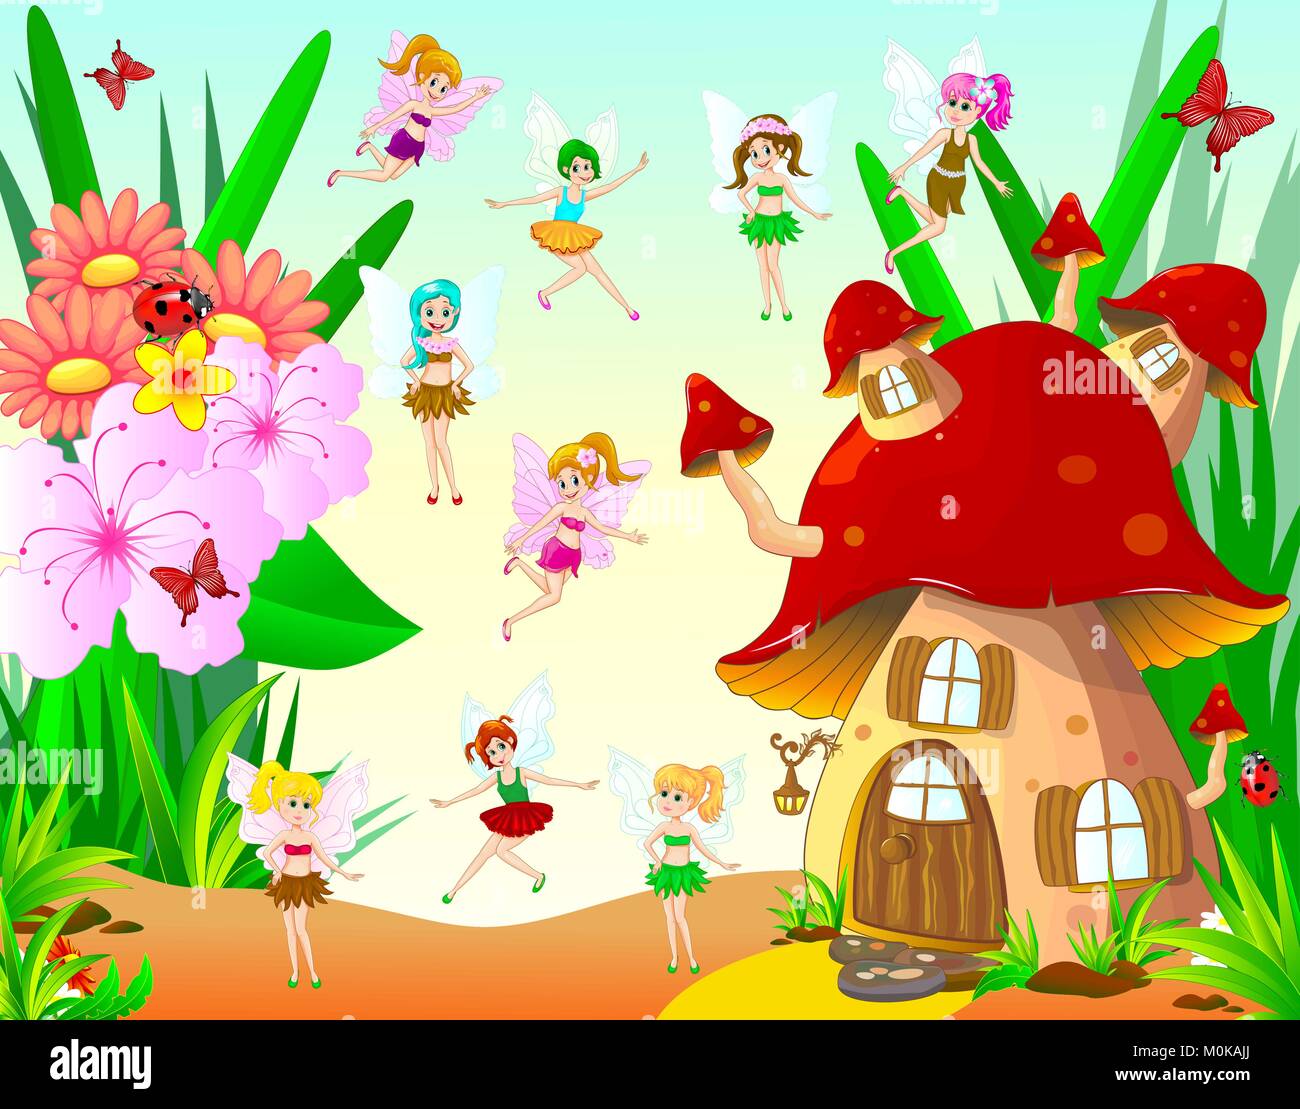 Fairies fly around the mushroom house. Fairies fly around the mushroom house. Fairies next to the mushroom house and flowers. Stock Vector